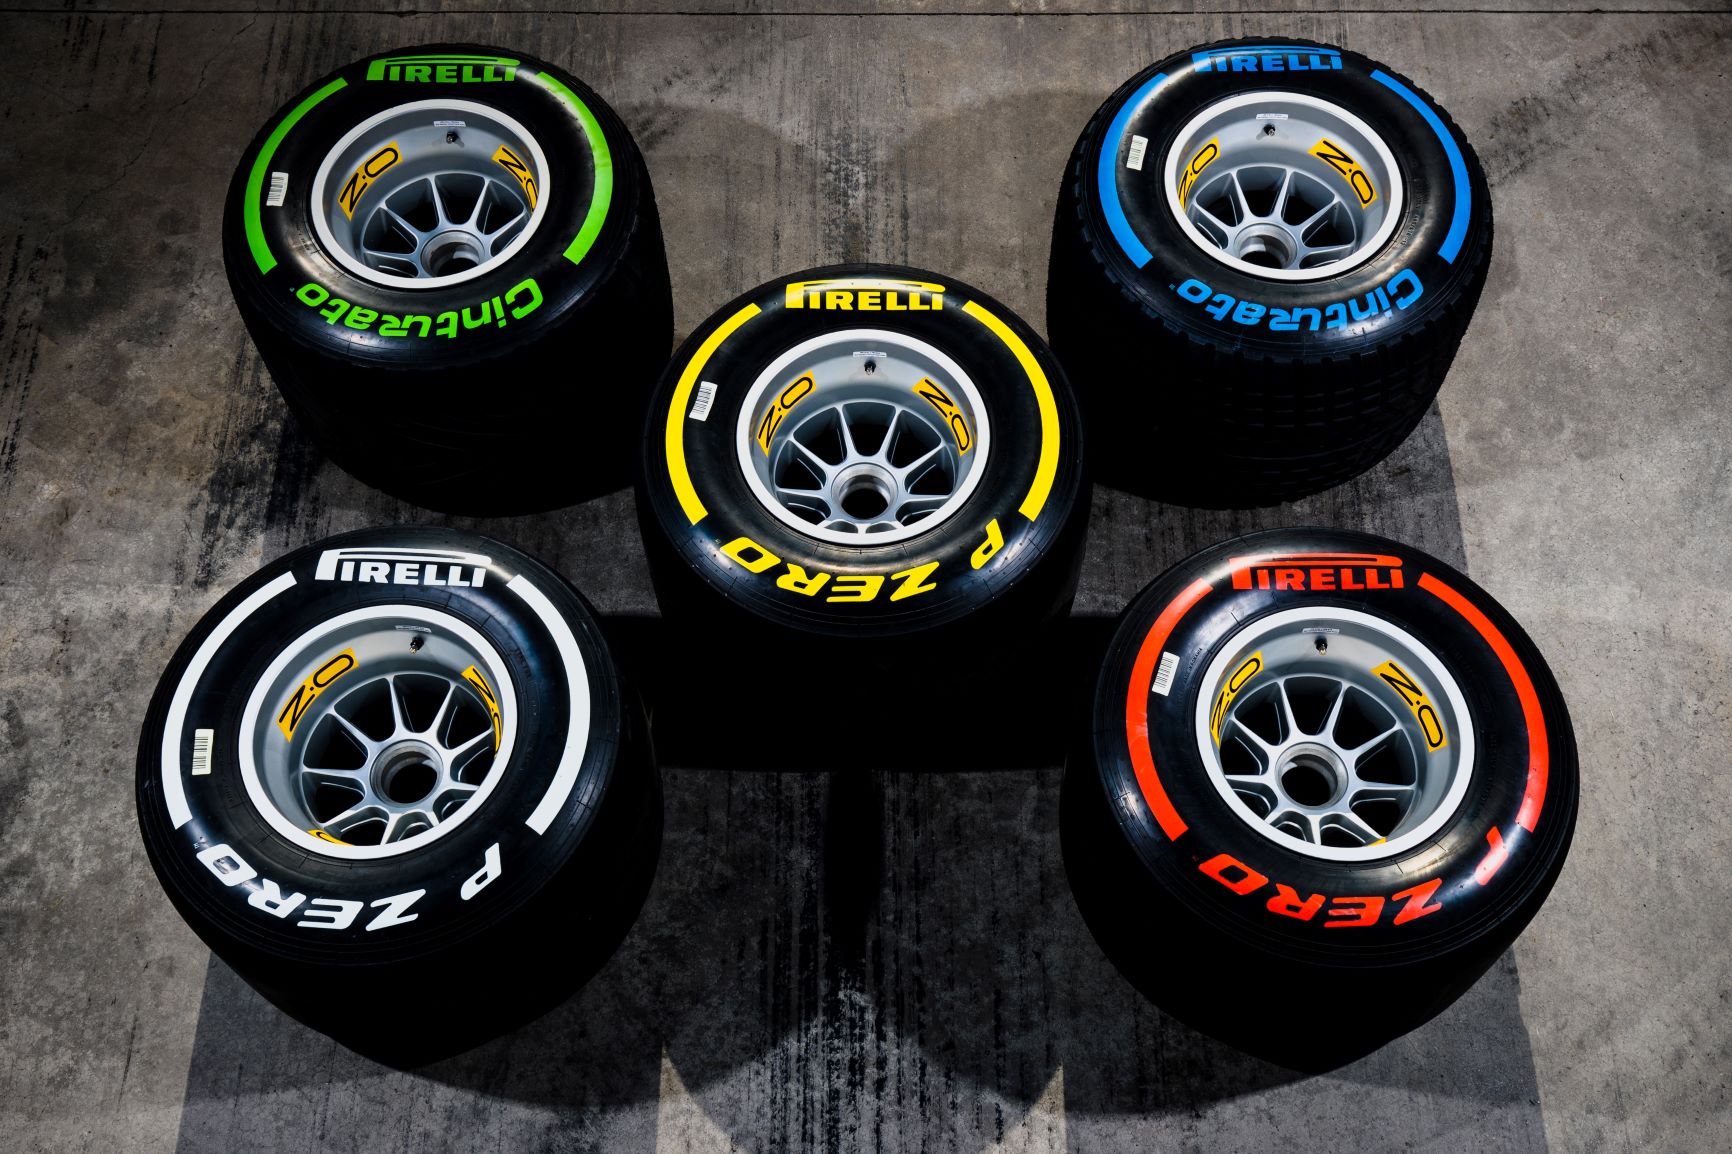 Mario Isola spiega il cambio di scelta degli pneumatici Pirelli per il GP d’Australia